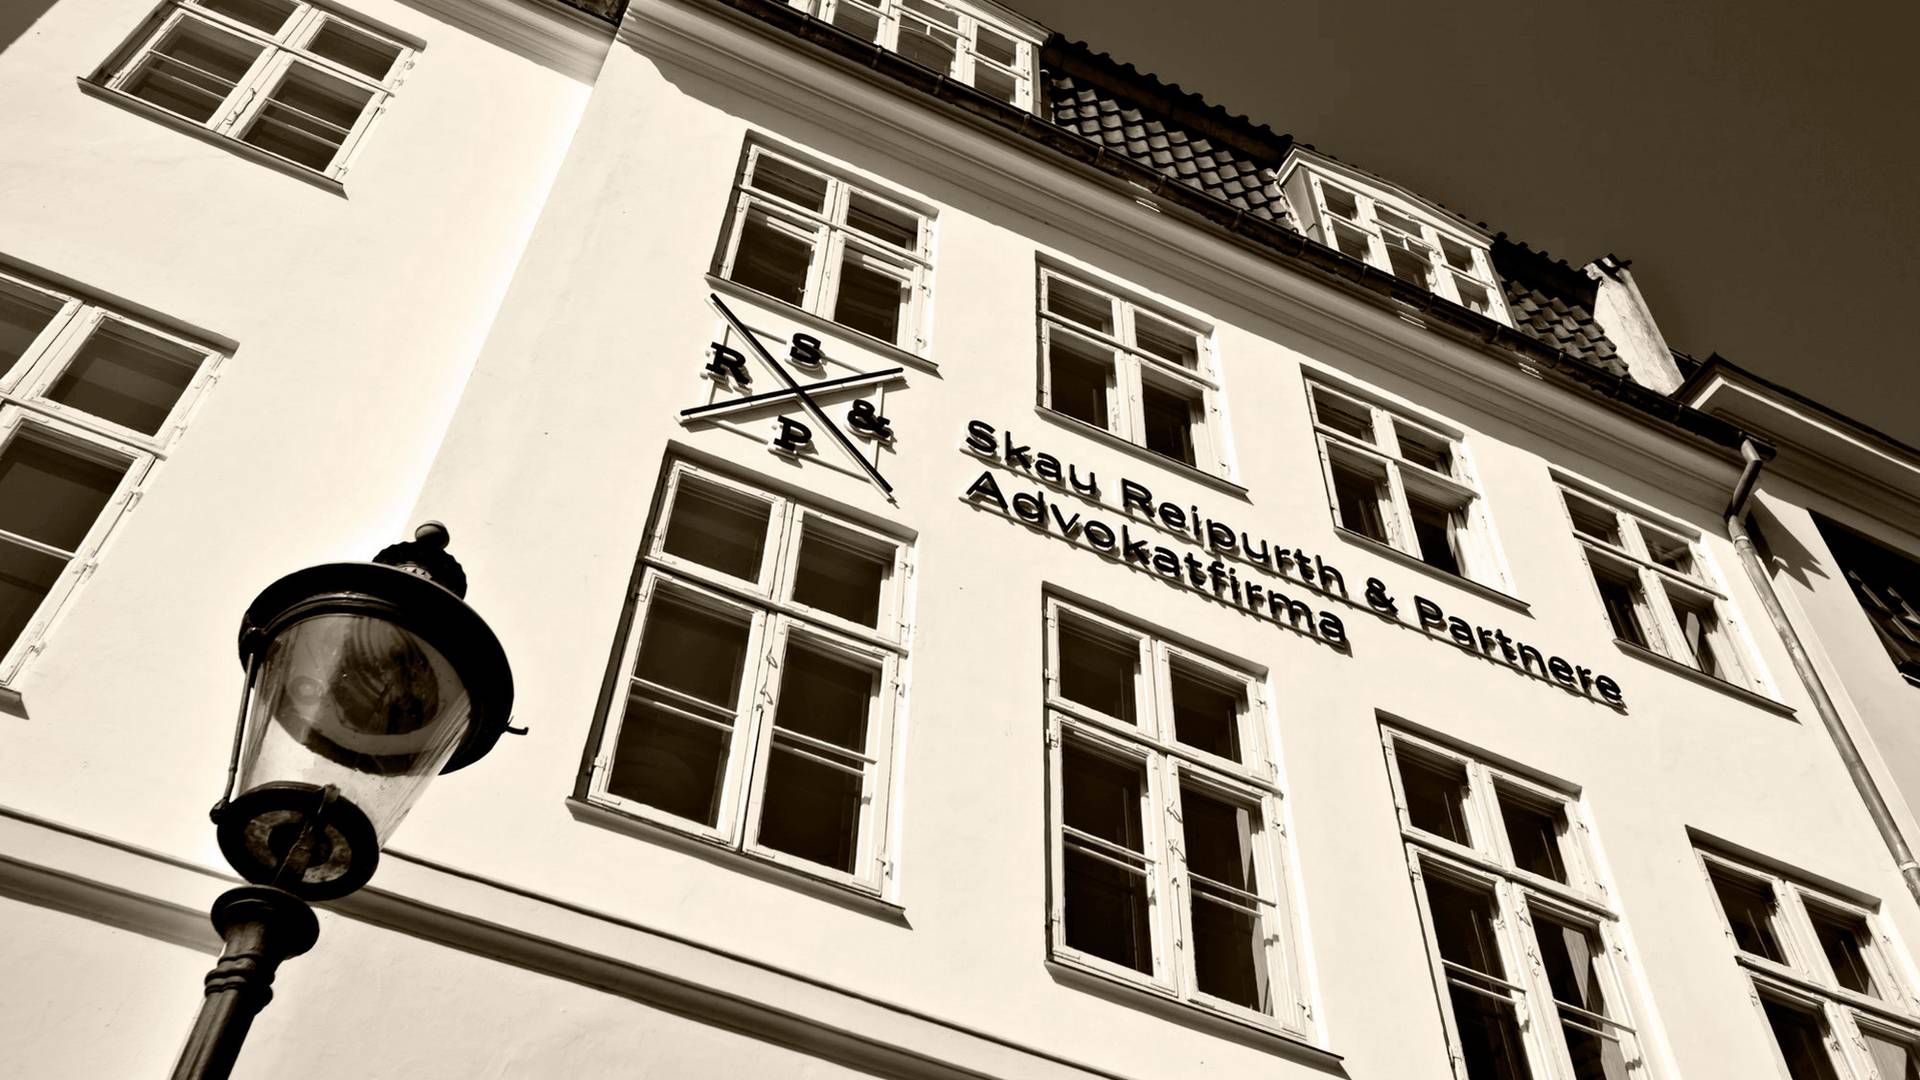 Omsætningen lød sidste år på godt 90 mio. kr. hos advokatfirmaet Skau Reipurth & Partnere, der holder til på Amaliegade i centrum af København | Foto: Liselotte Plenov / Fotorummet